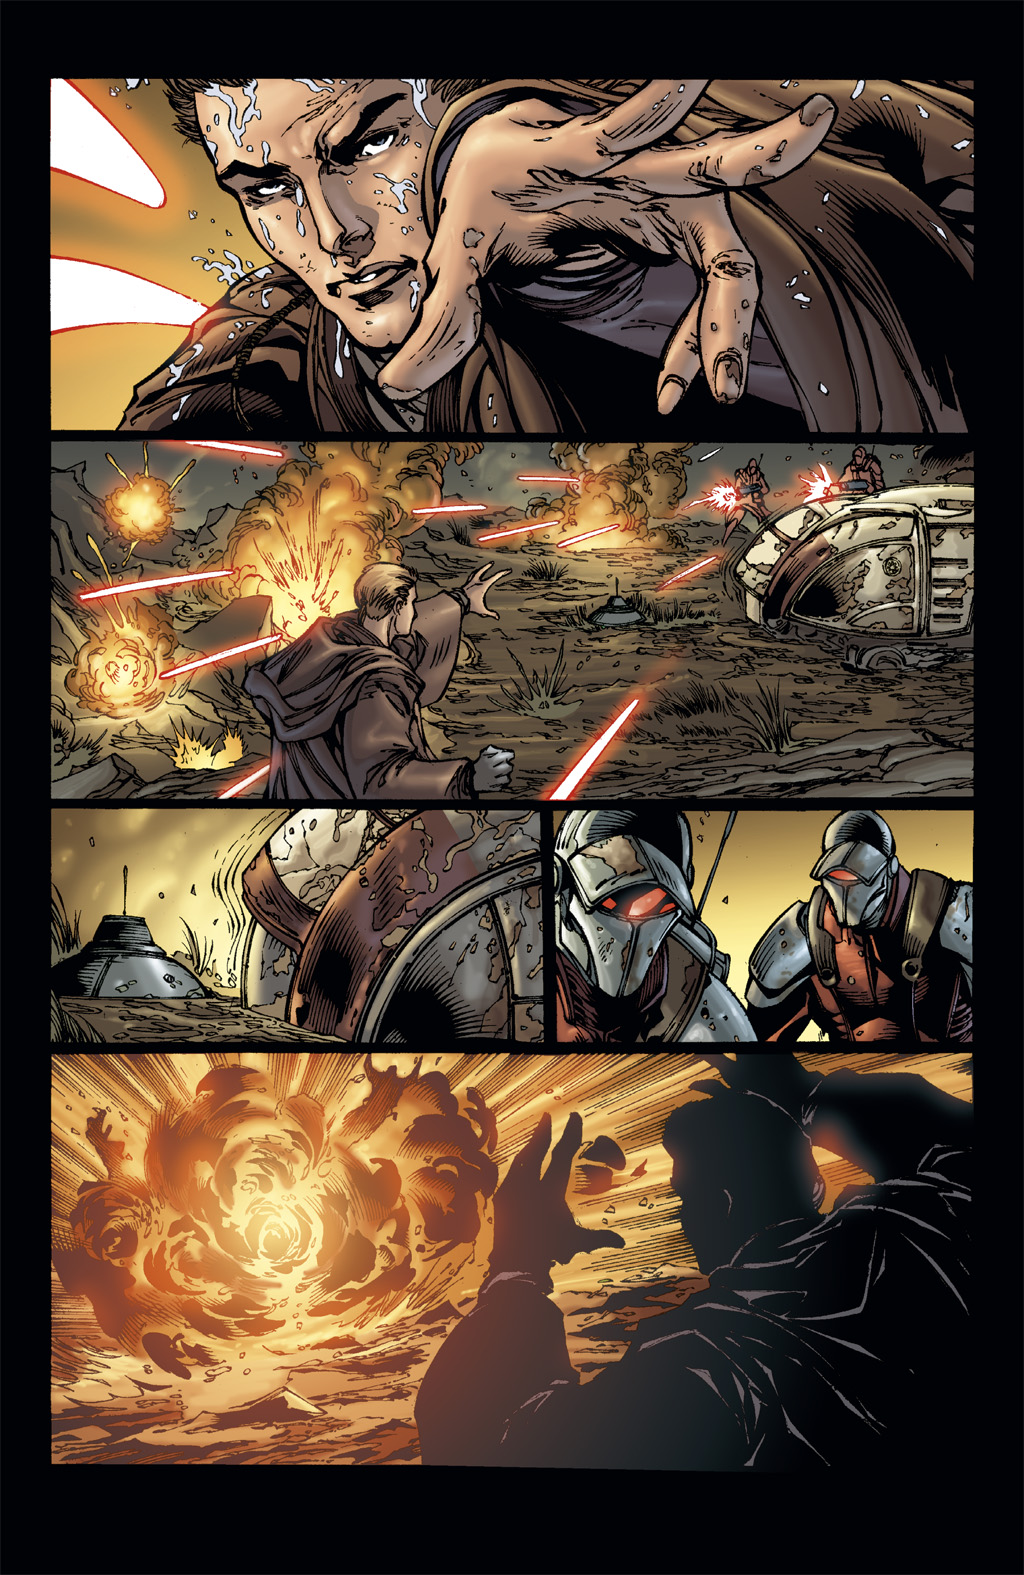 Read online Star Wars: Clone Wars comic -  Issue # TPB 3 - 45